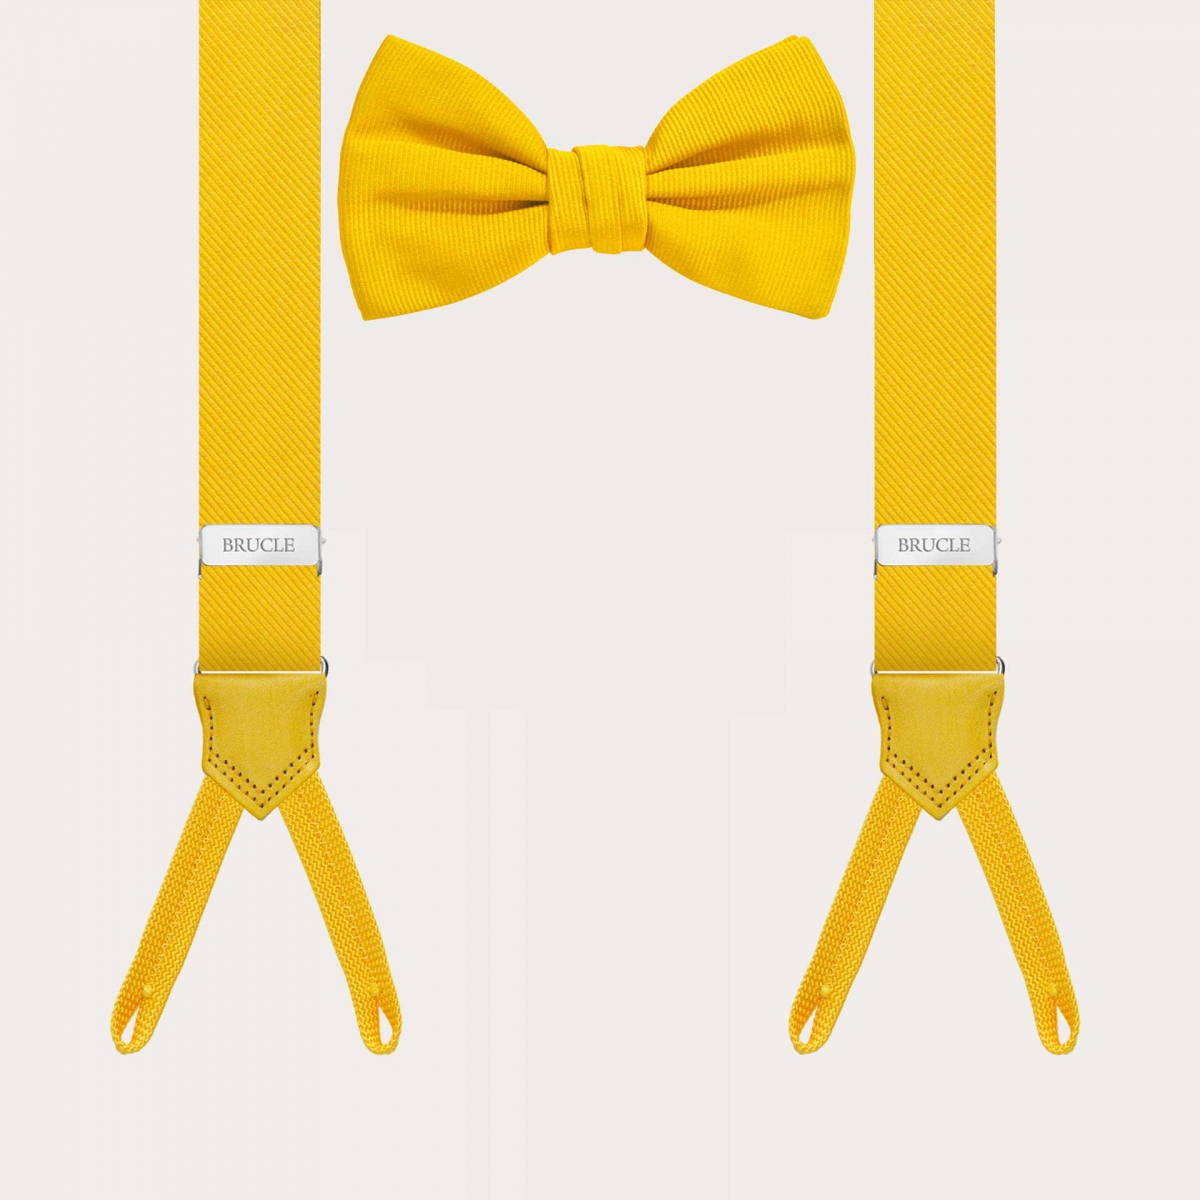 Ensemble coordonné jaune de bretelles étroites pour boutons et nœud papillon en soie.